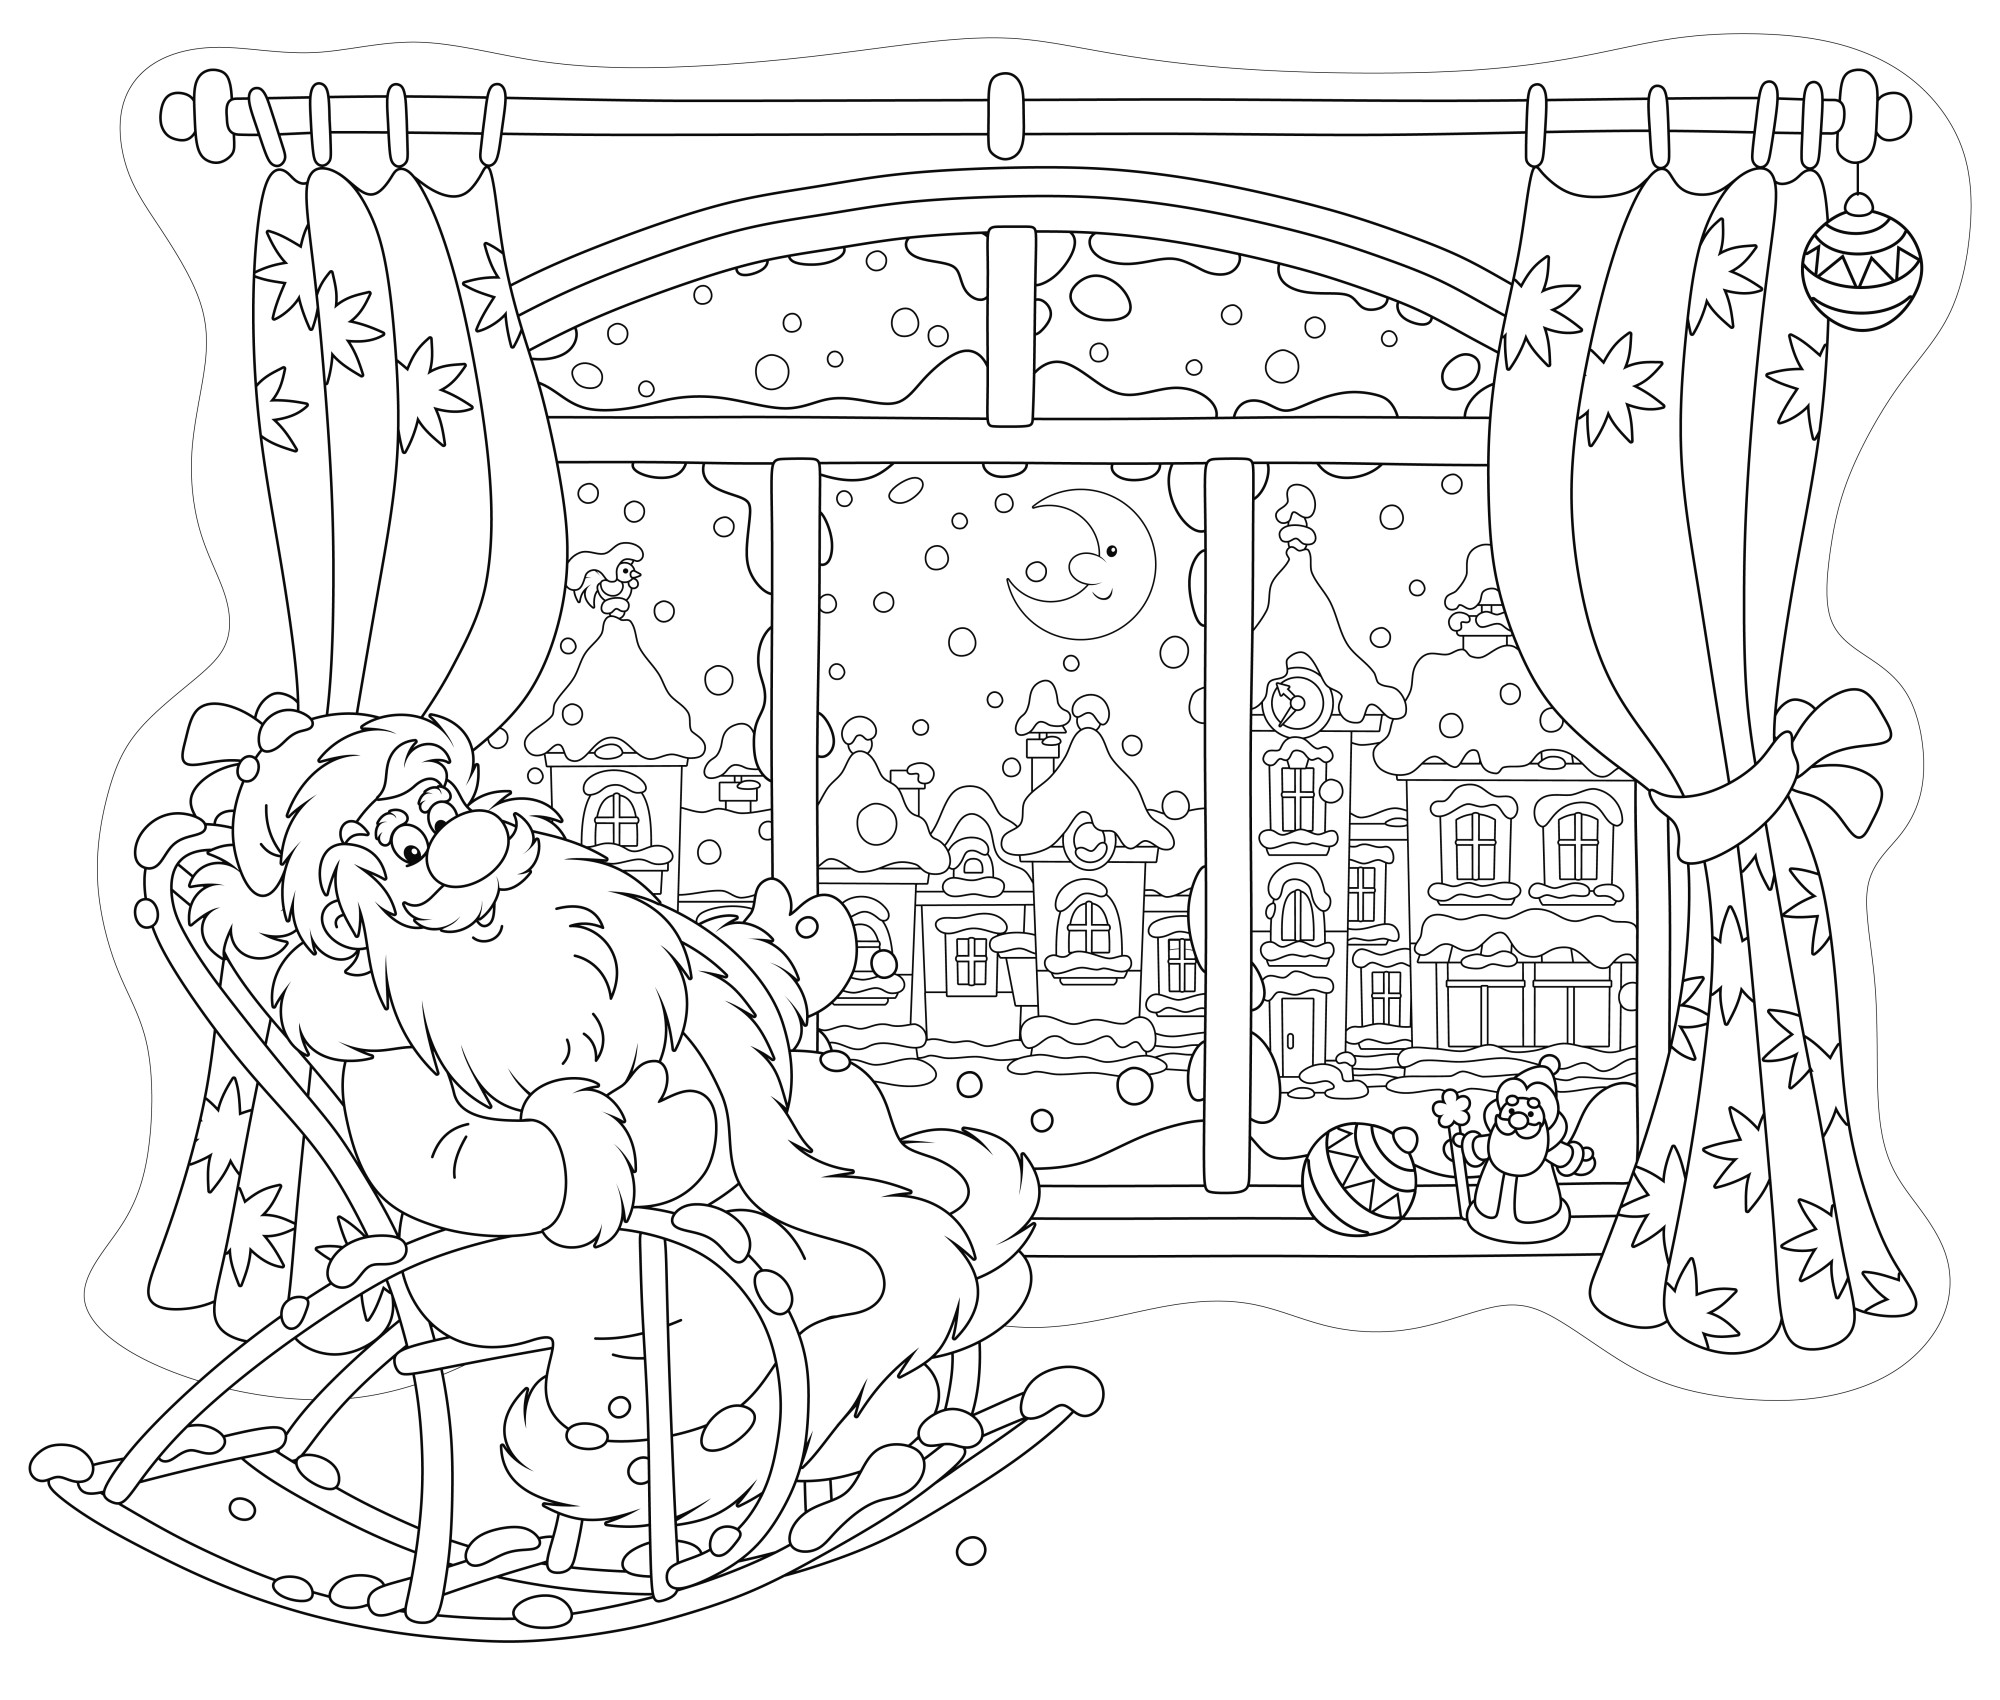 Раскраска для детей: дед мороз смотрит в окно сидя в кресле-качалке дома